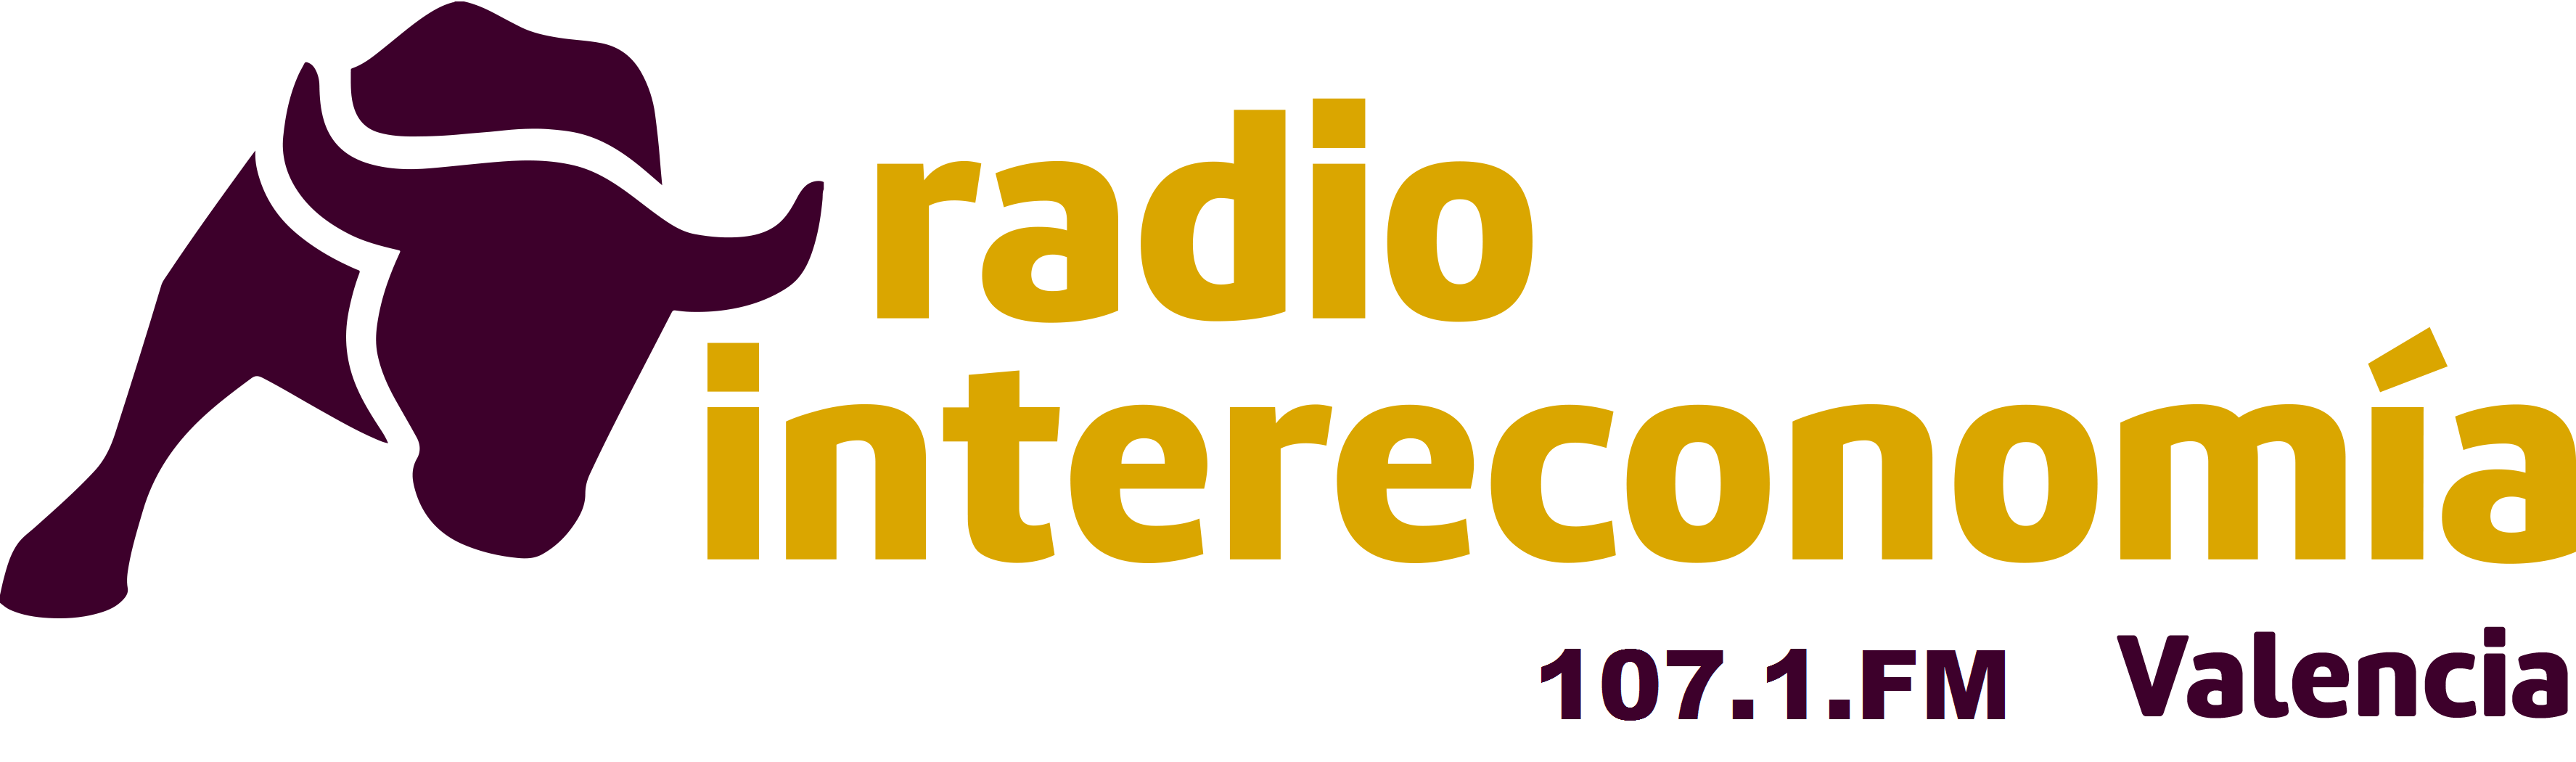 Radio Intereconomía Valencia